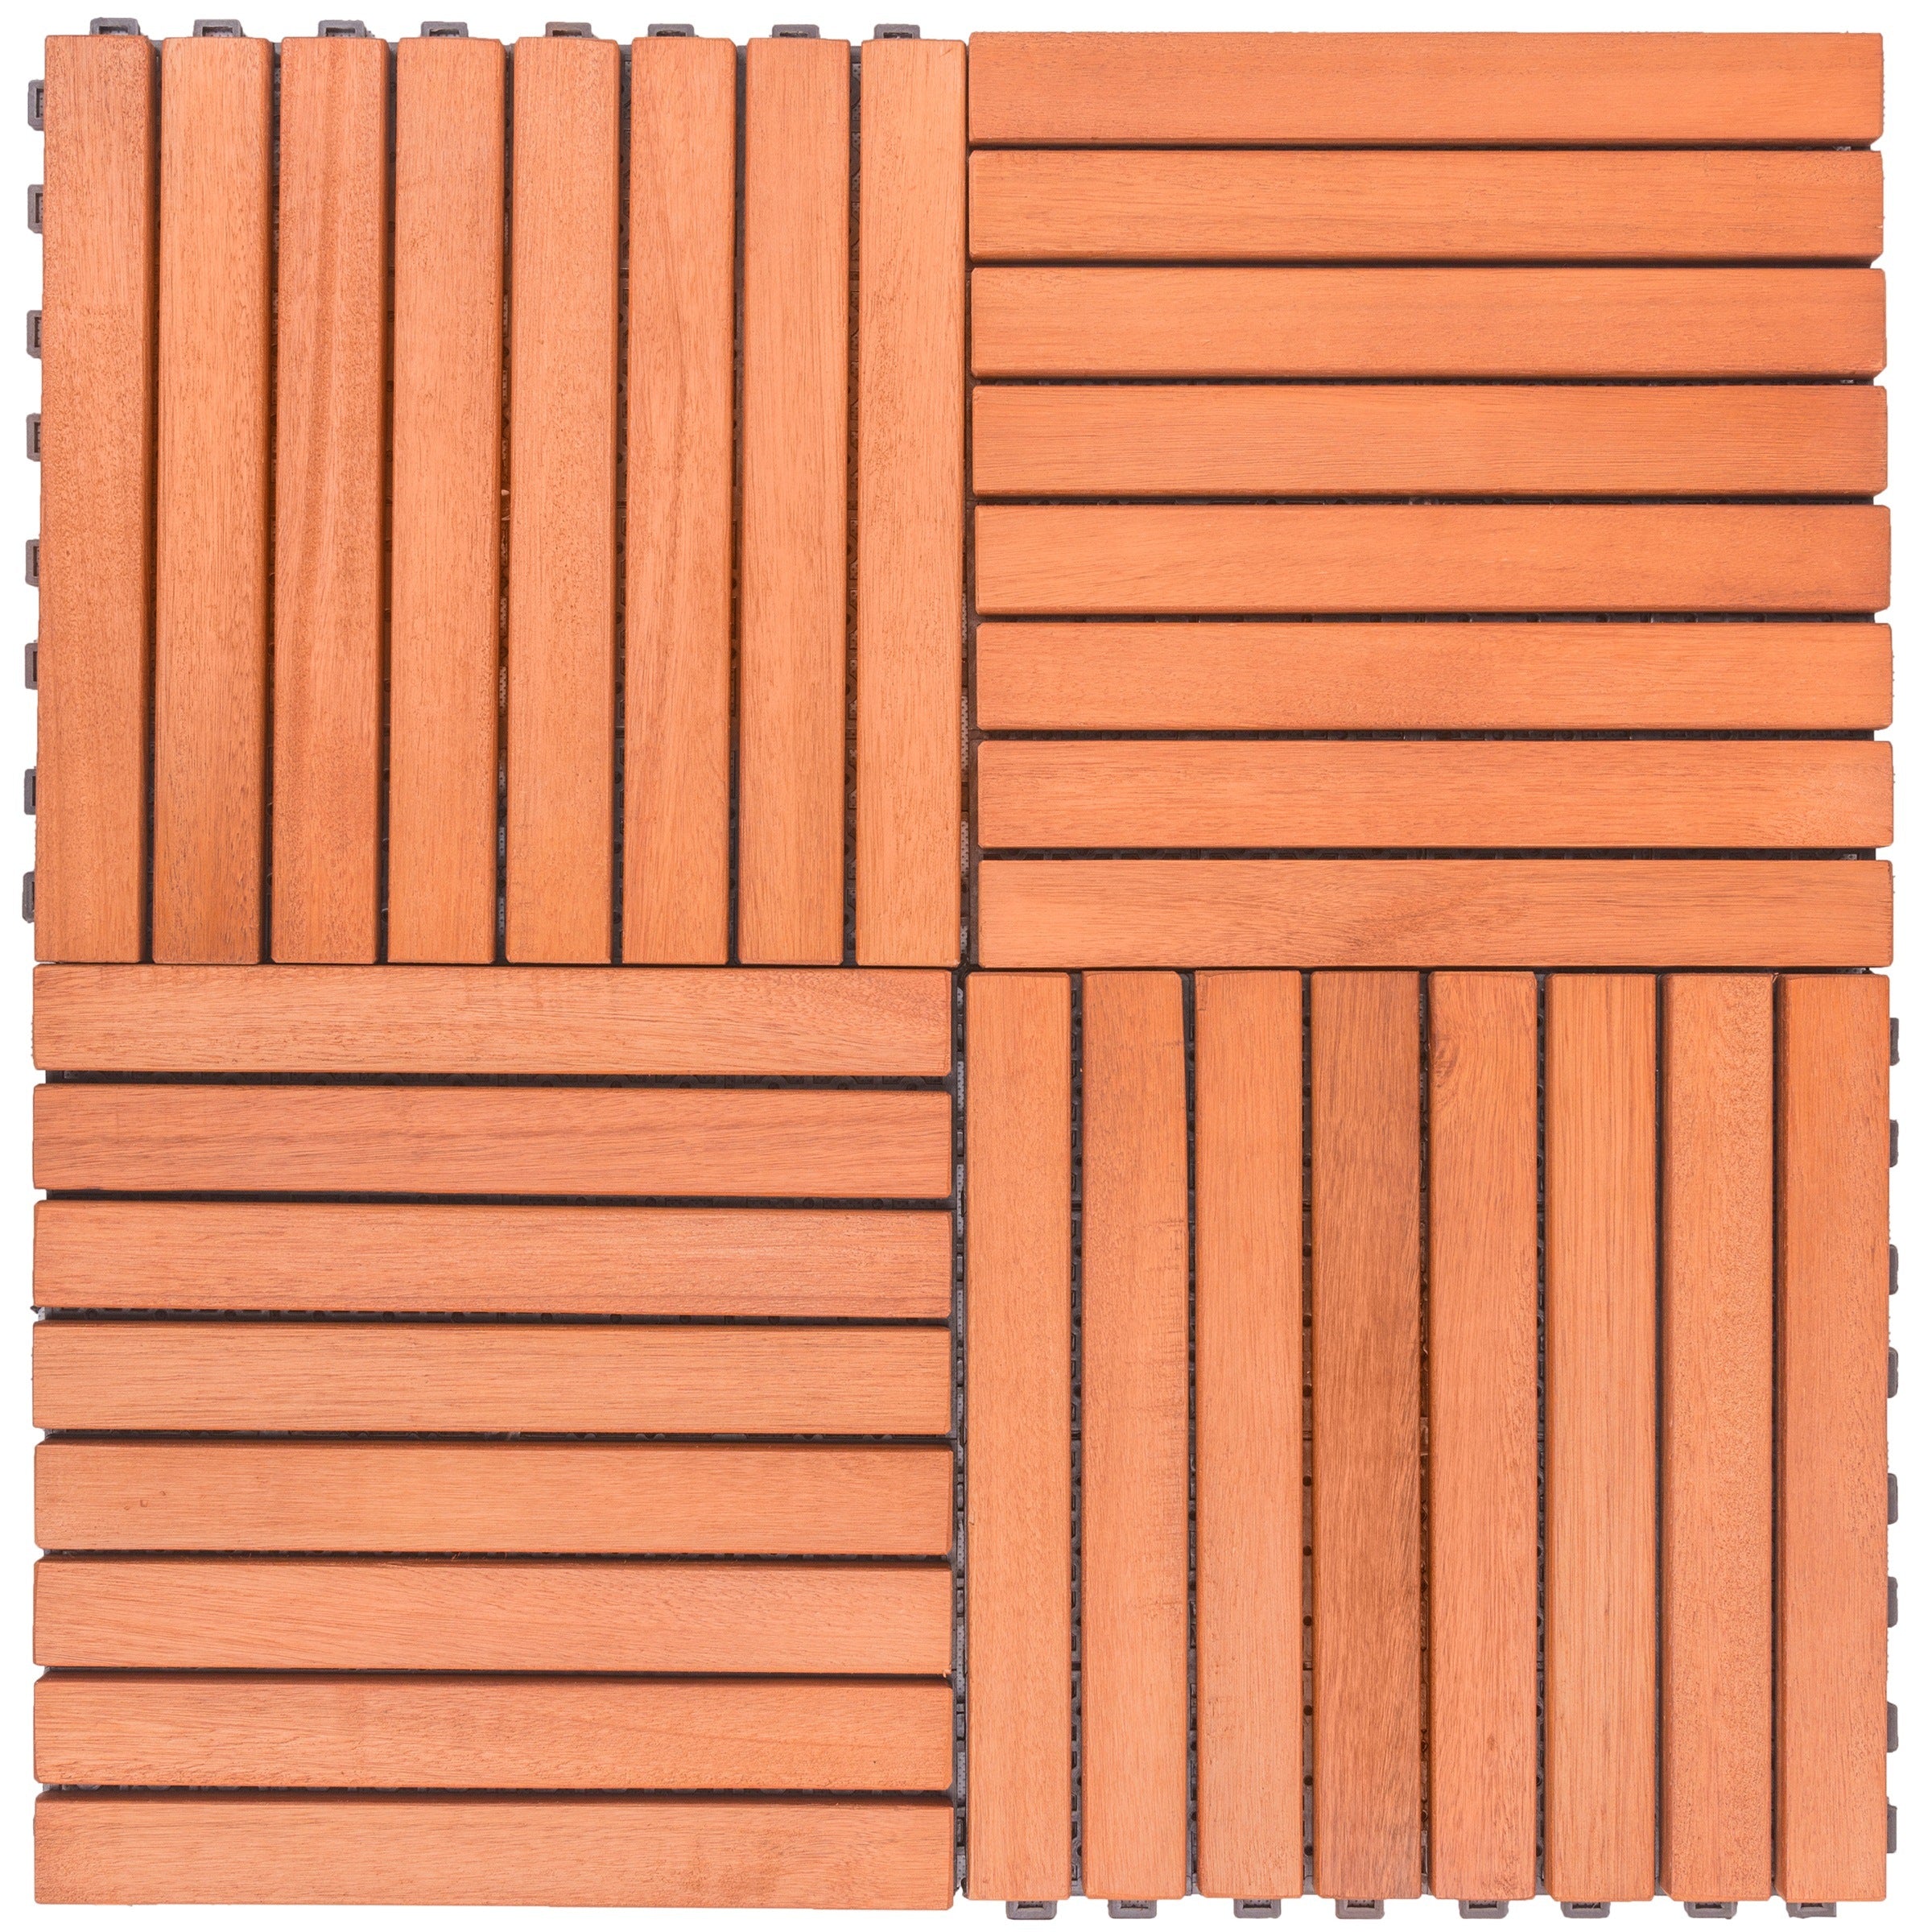 Kaia 8-Slat Reddish Brown Wood Interlocking Deck Tile (Set of 10 Tiles)